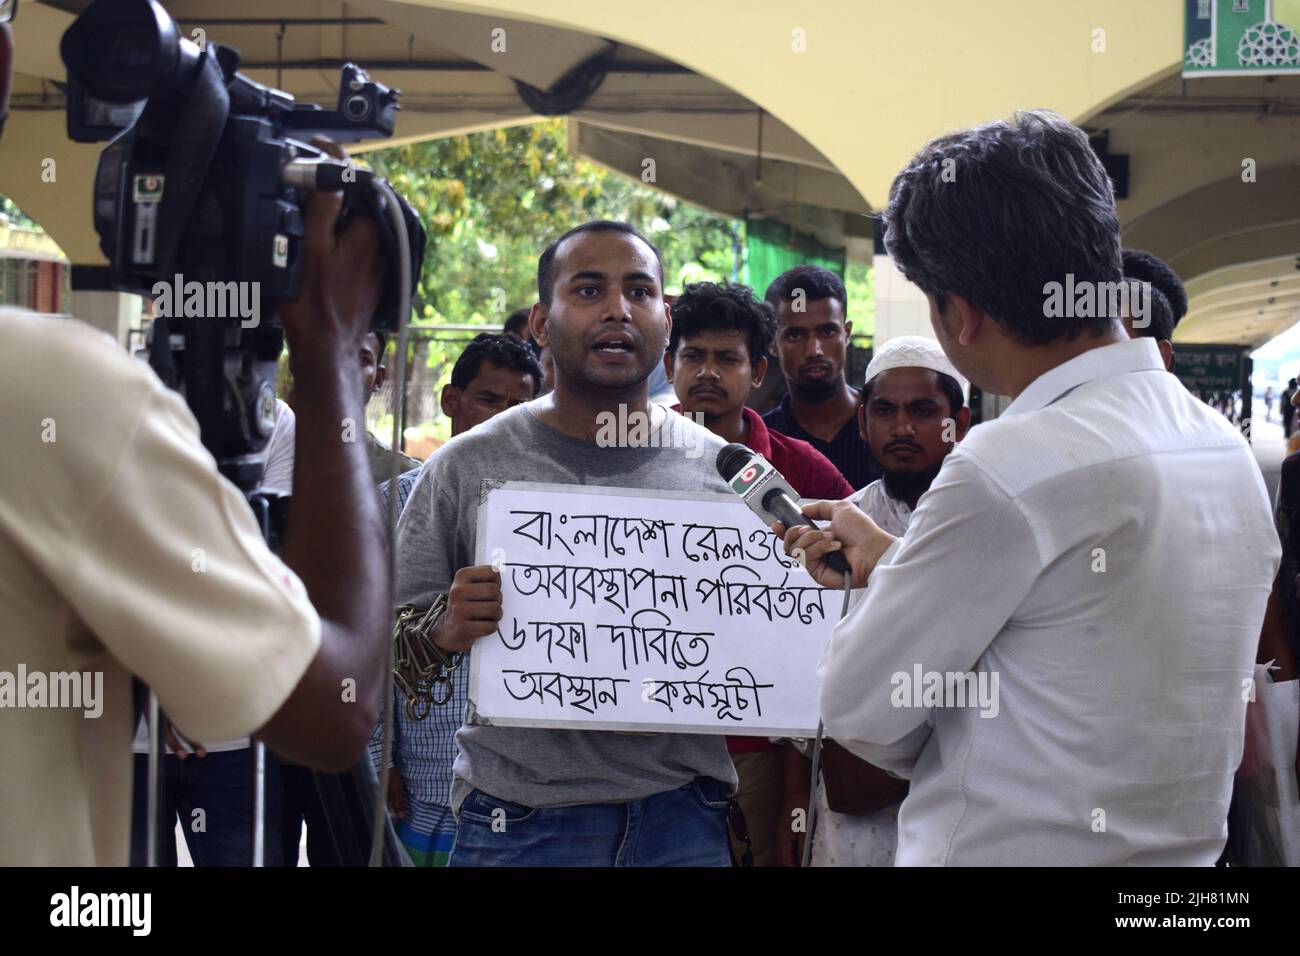 16 de julio de 2022, Dhaka, Bangladesh: Mohiuddin Roni, Un estudiante de la Universidad de Dhaka ha estado alojado en la estación ferroviaria de Kamalapur, en Dhaka, durante 10 días protestando contra la comercialización negra de los billetes de tren y la mala gestión general. Durante Eid Ul-Adha, en su camino de regreso a casa, reservó el billete de tren vía Internet, pero no pudo viajar debido a la cuestión del mercado negro con el billete. Luego tomó un puesto de protesta en la estación y comenzó a protestar a través de artes escénicas. Él mismo ha encadenado sus manos. Él presentó 6 demandas del punto y anunció continuar su programa de la sentada-en hasta que éstas sean Foto de stock